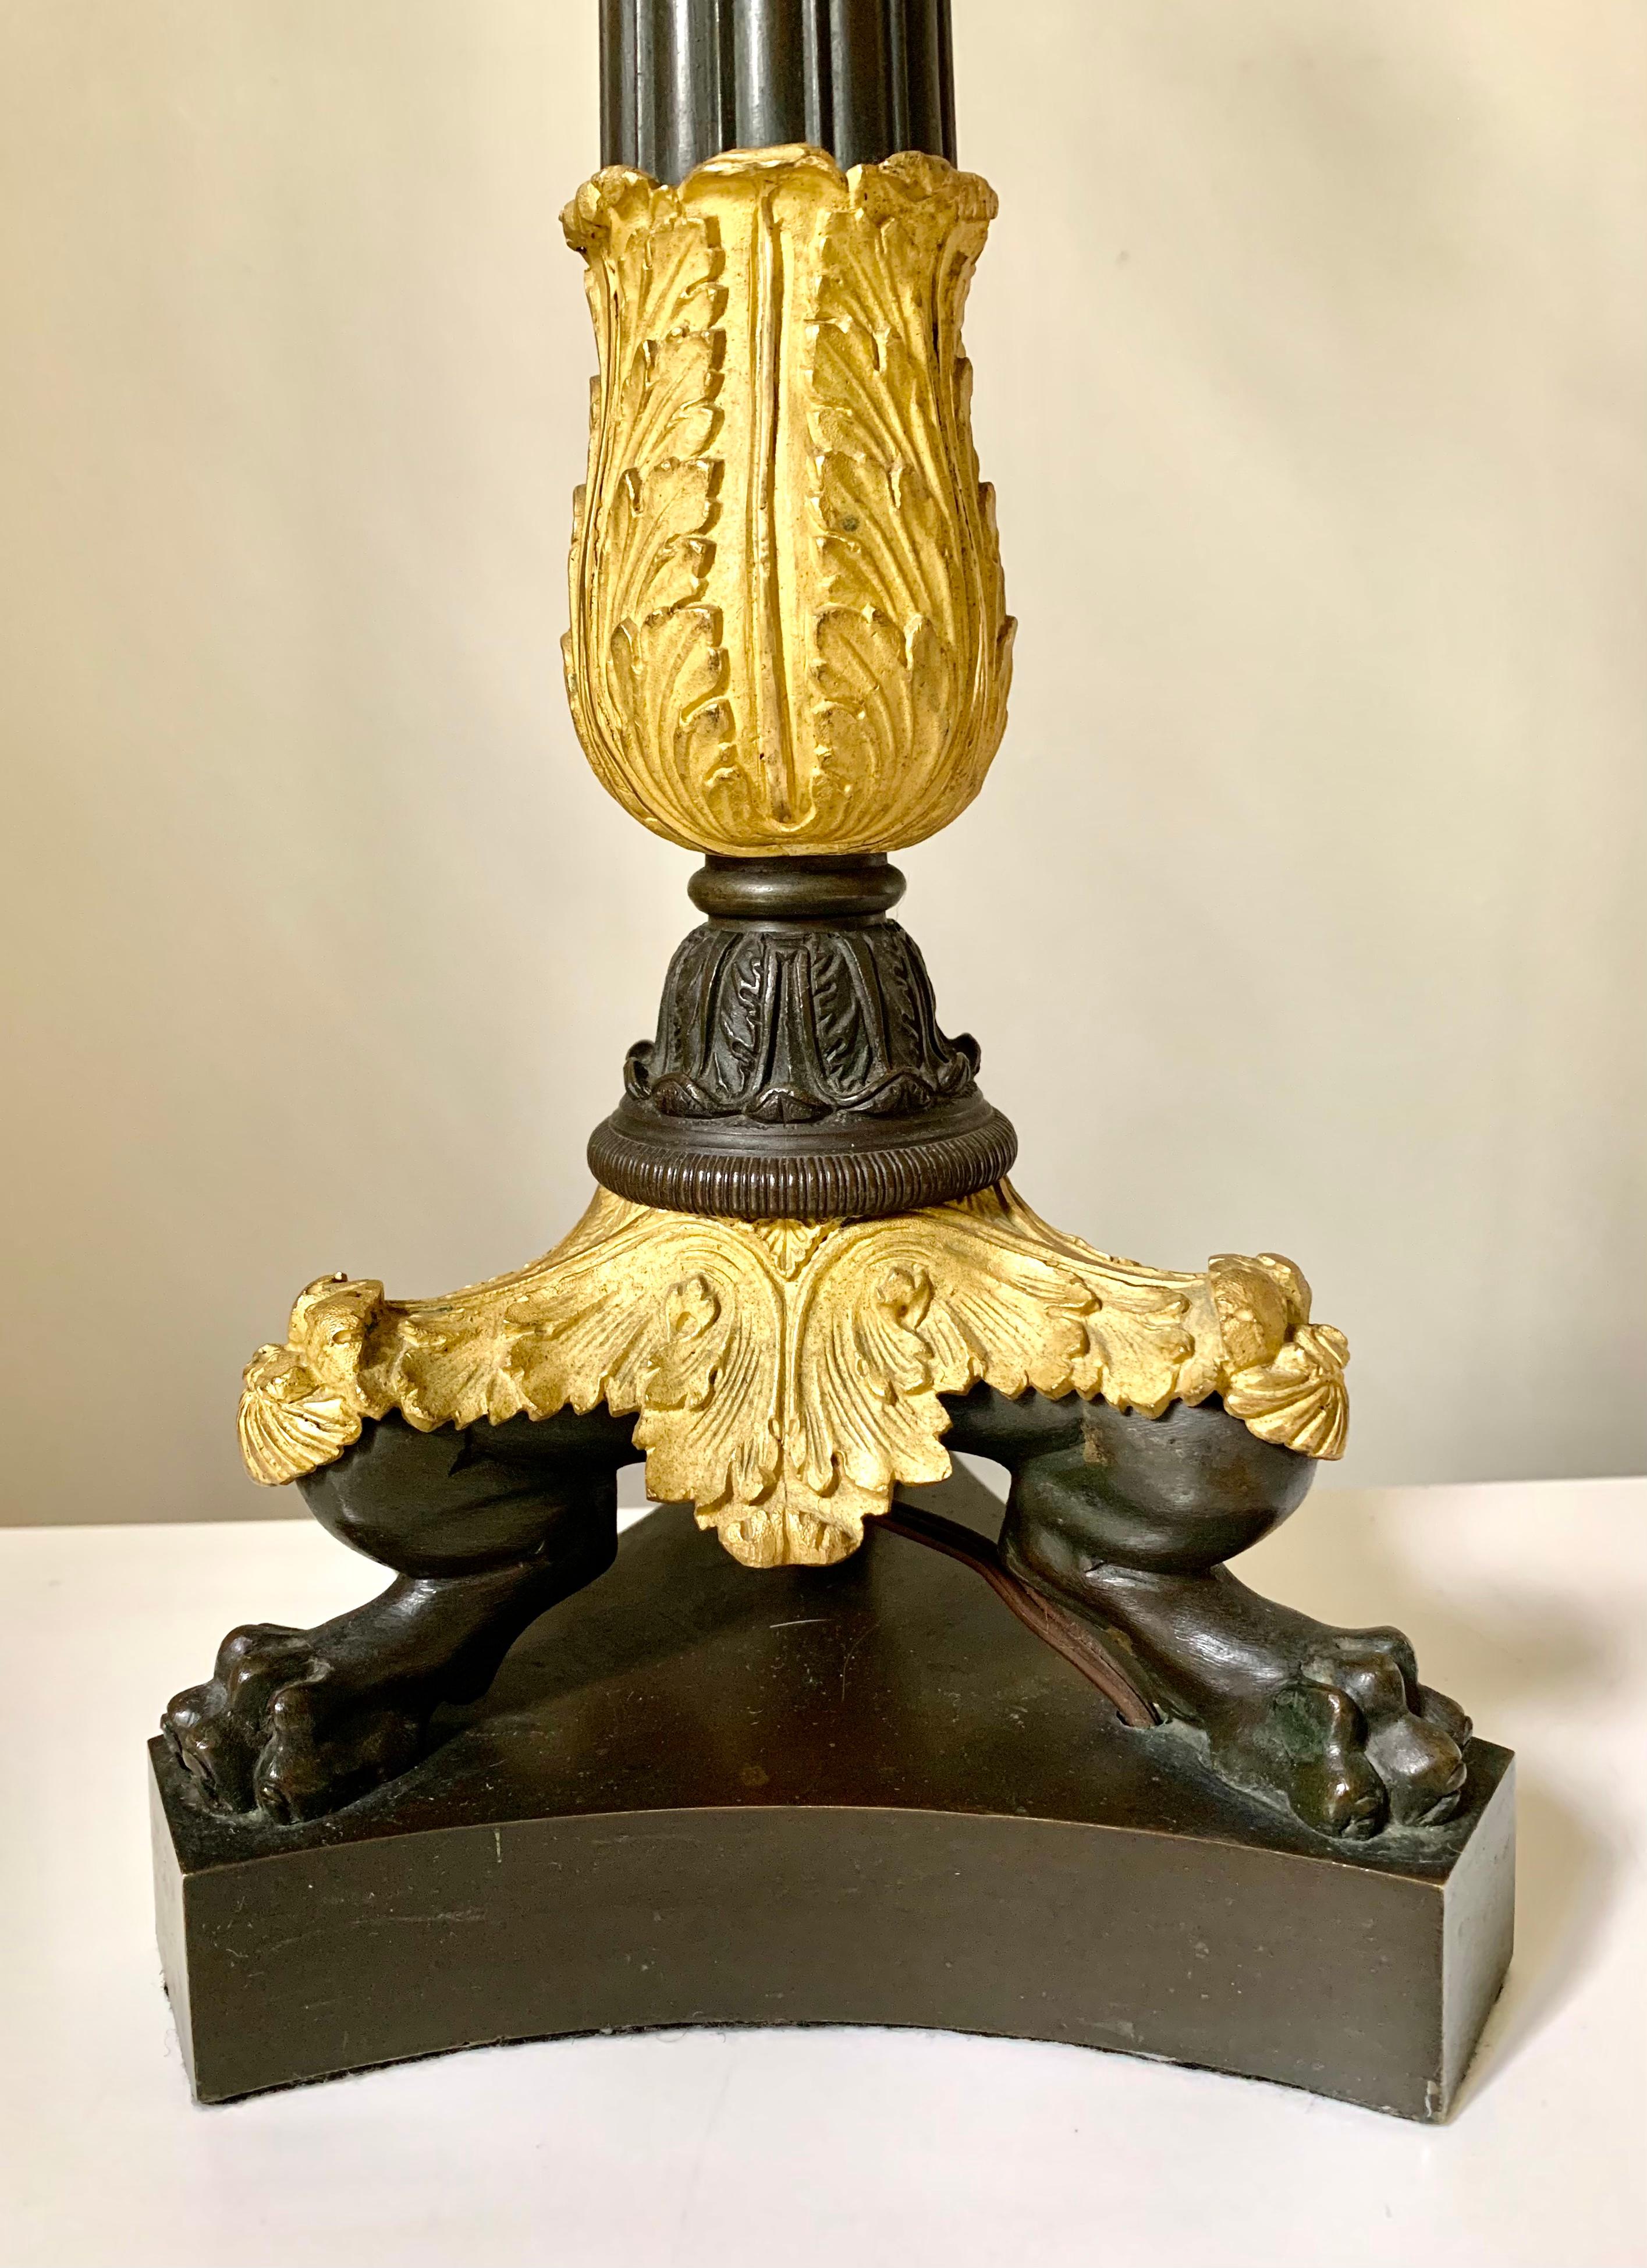 Zwei vergoldete und patinierte Bronzekandelaber aus der Zeit Karls X. von hoher Qualität. Jede hat einen zentralen, von Hand ziselierten Kerzenstiel aus vergoldeter Bronze, der mit vierblättrigen Kleeblättern vor einem handgehämmerten Hintergrund